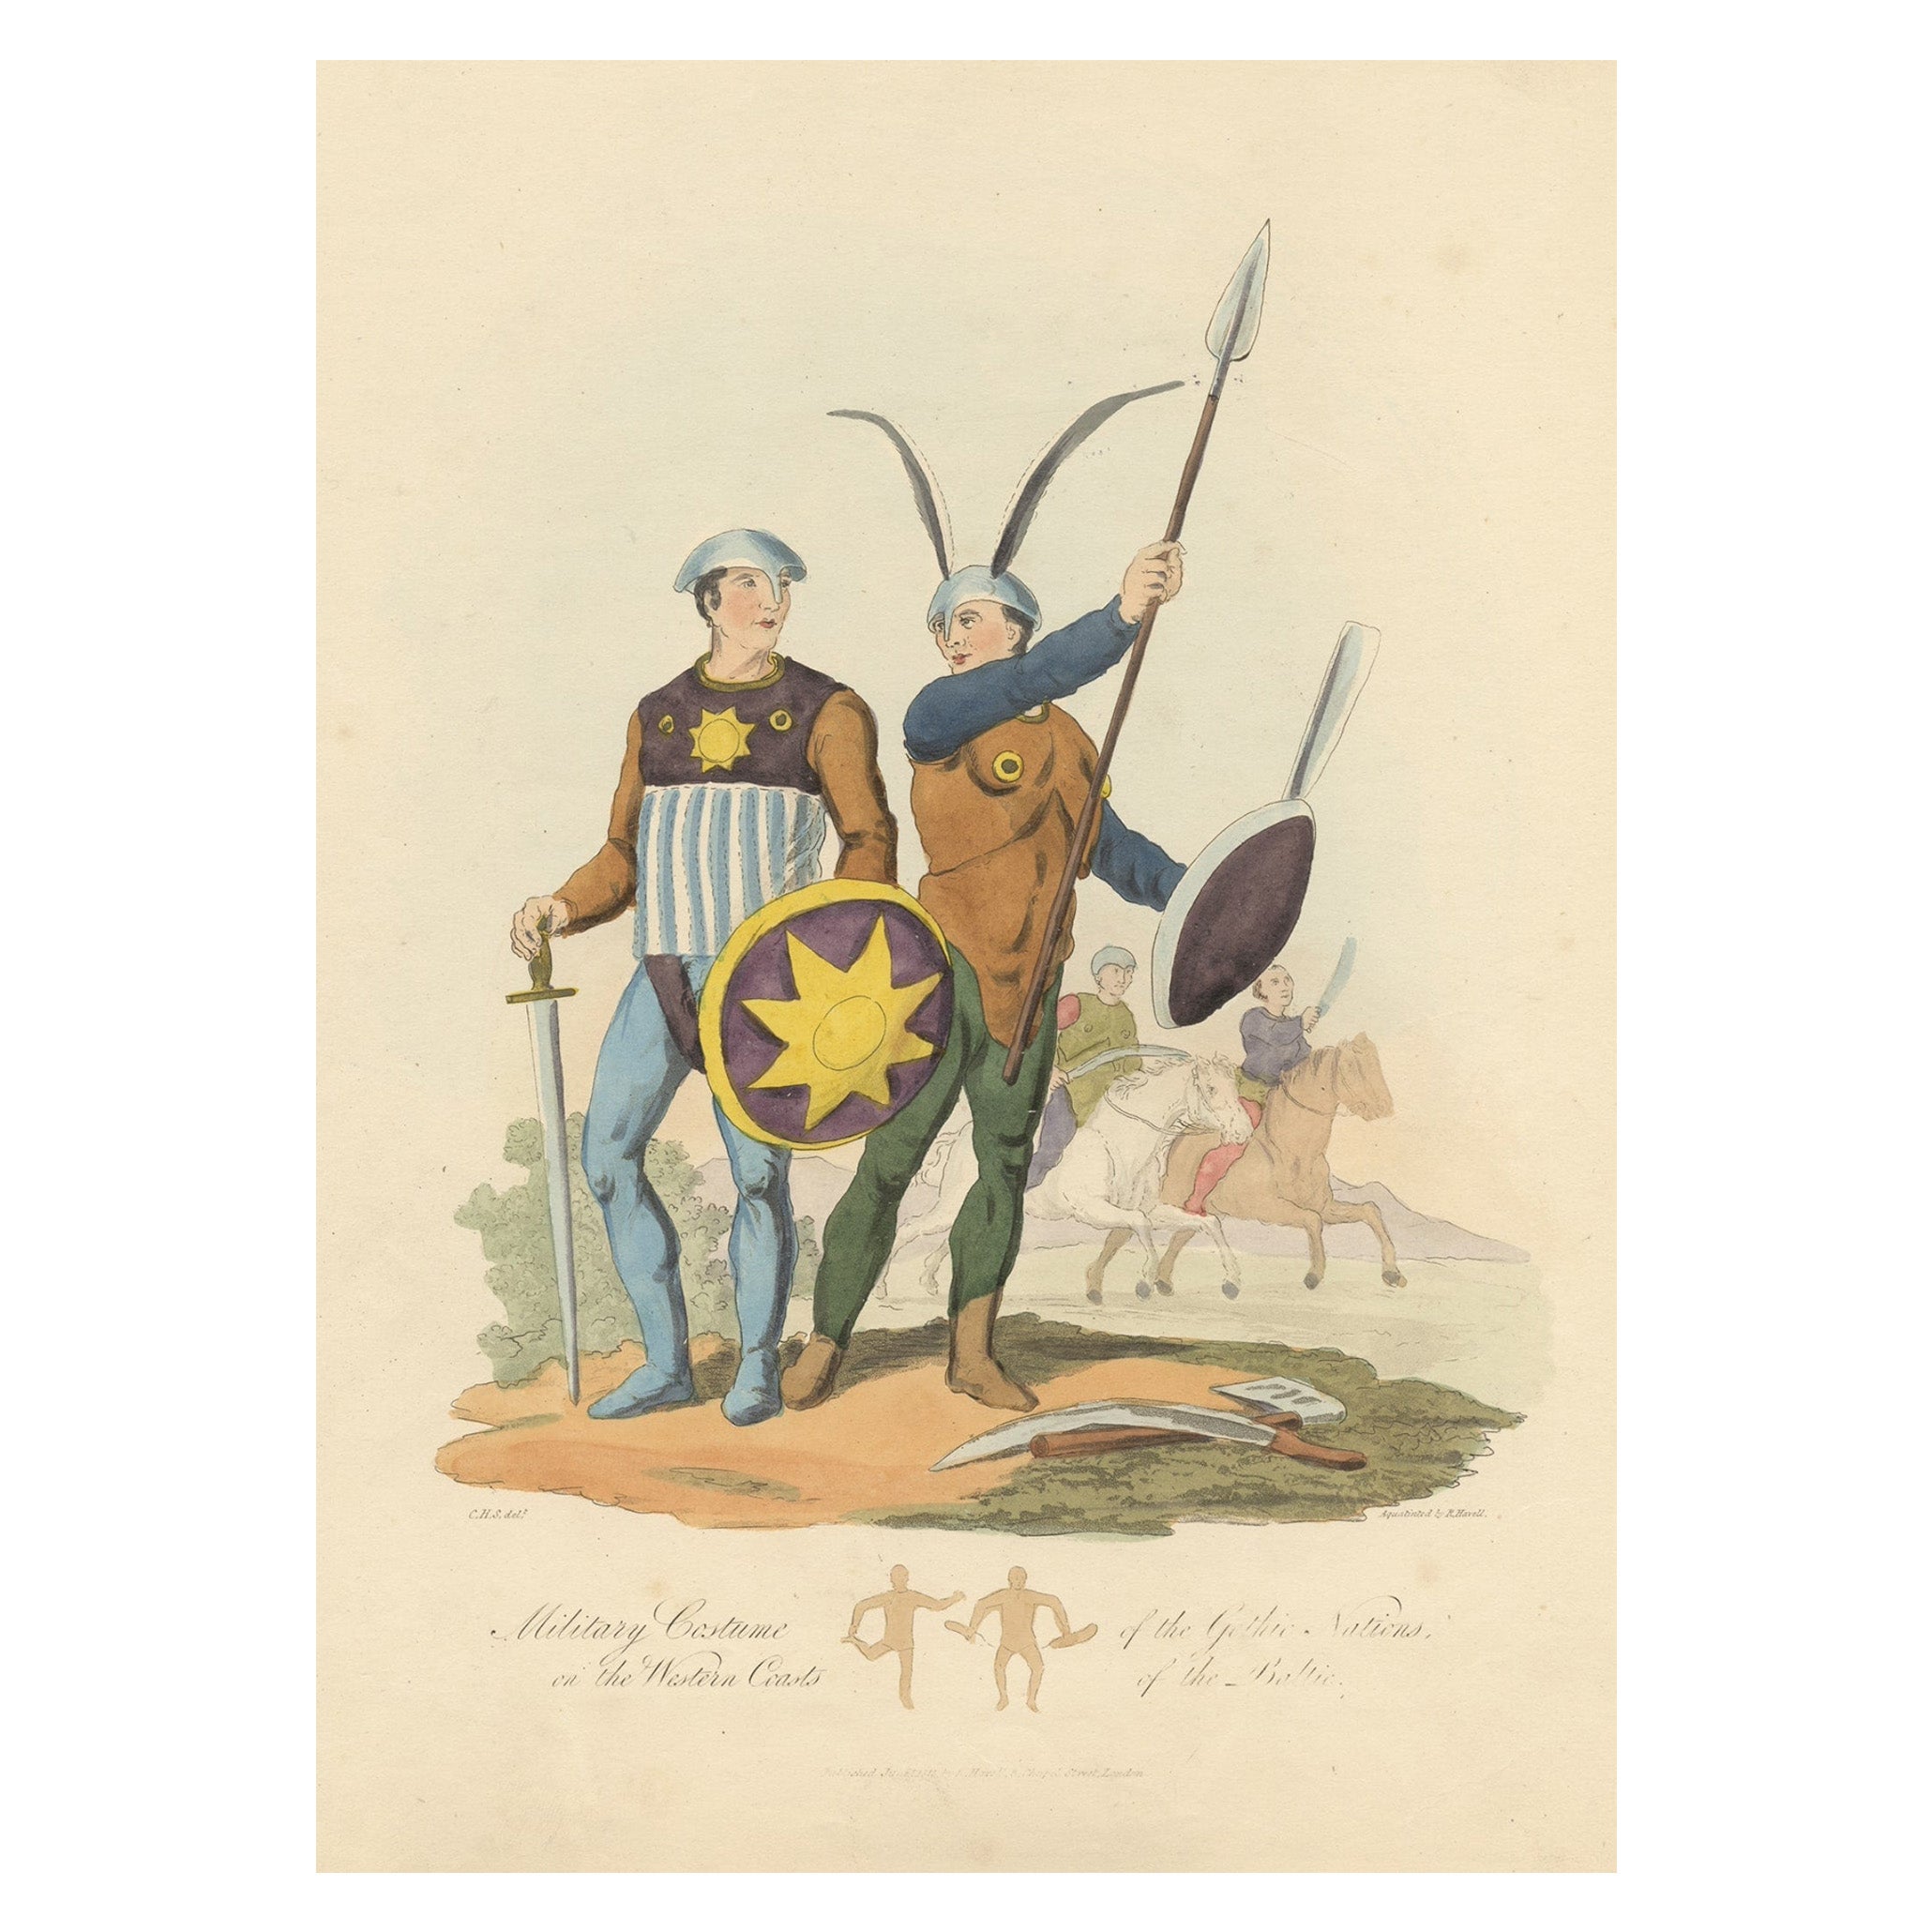 Militärische Kostüme der gotischen Nationen an den westlichen Küsten der Baltischeinseln, 1815